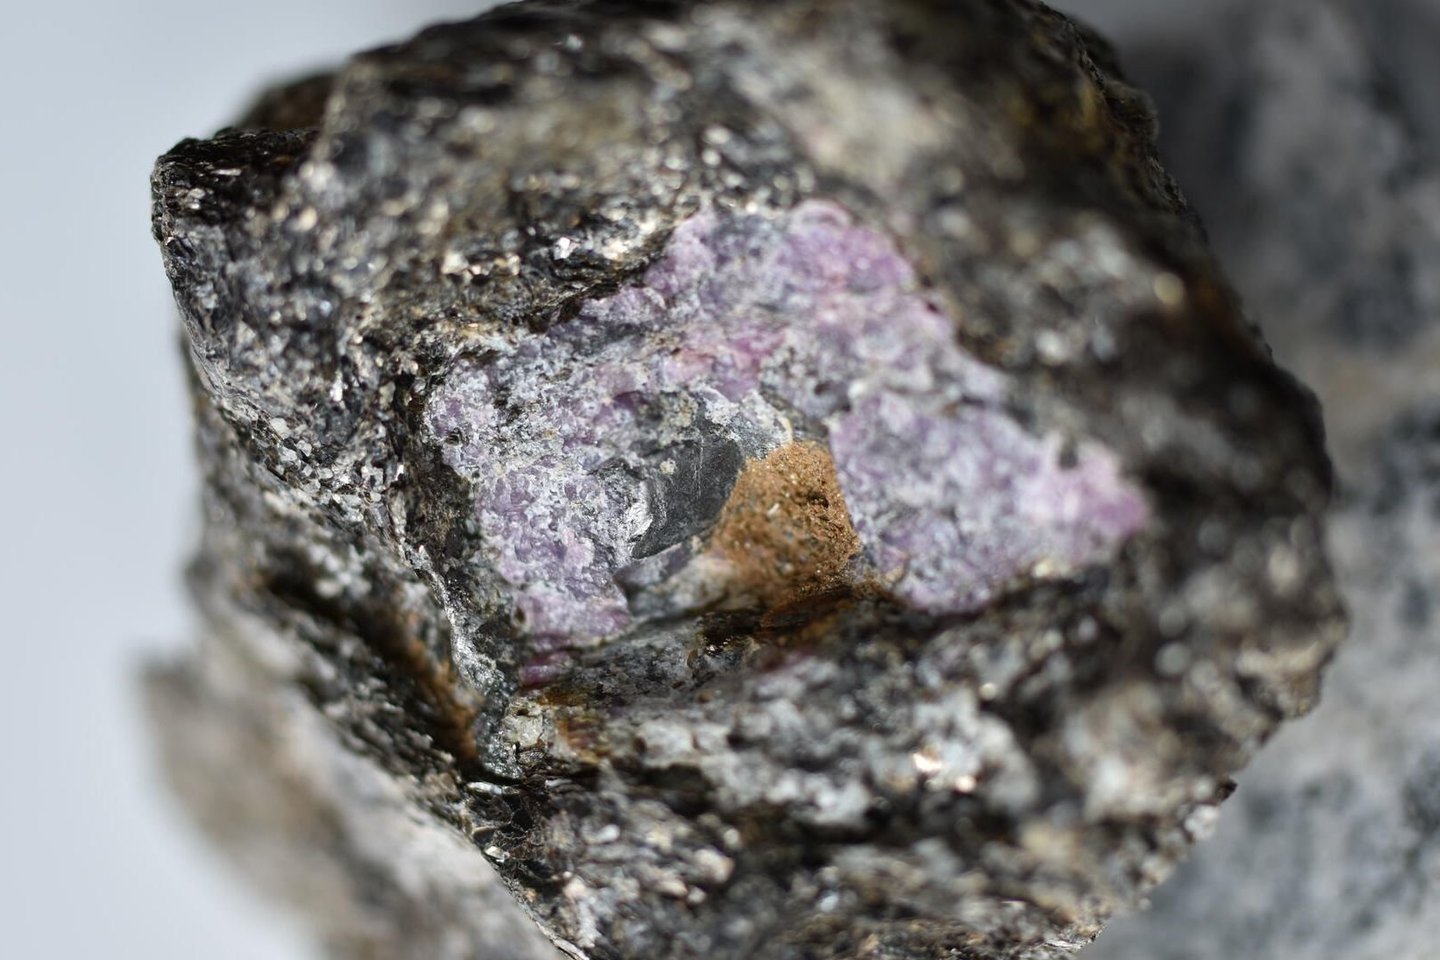  2,5 mlrd. metų senumo rubine iš Grenlandijos užfiksuoti senovinės gyvybės pėdsakai.<br> Vaterlo universiteto nuotr.